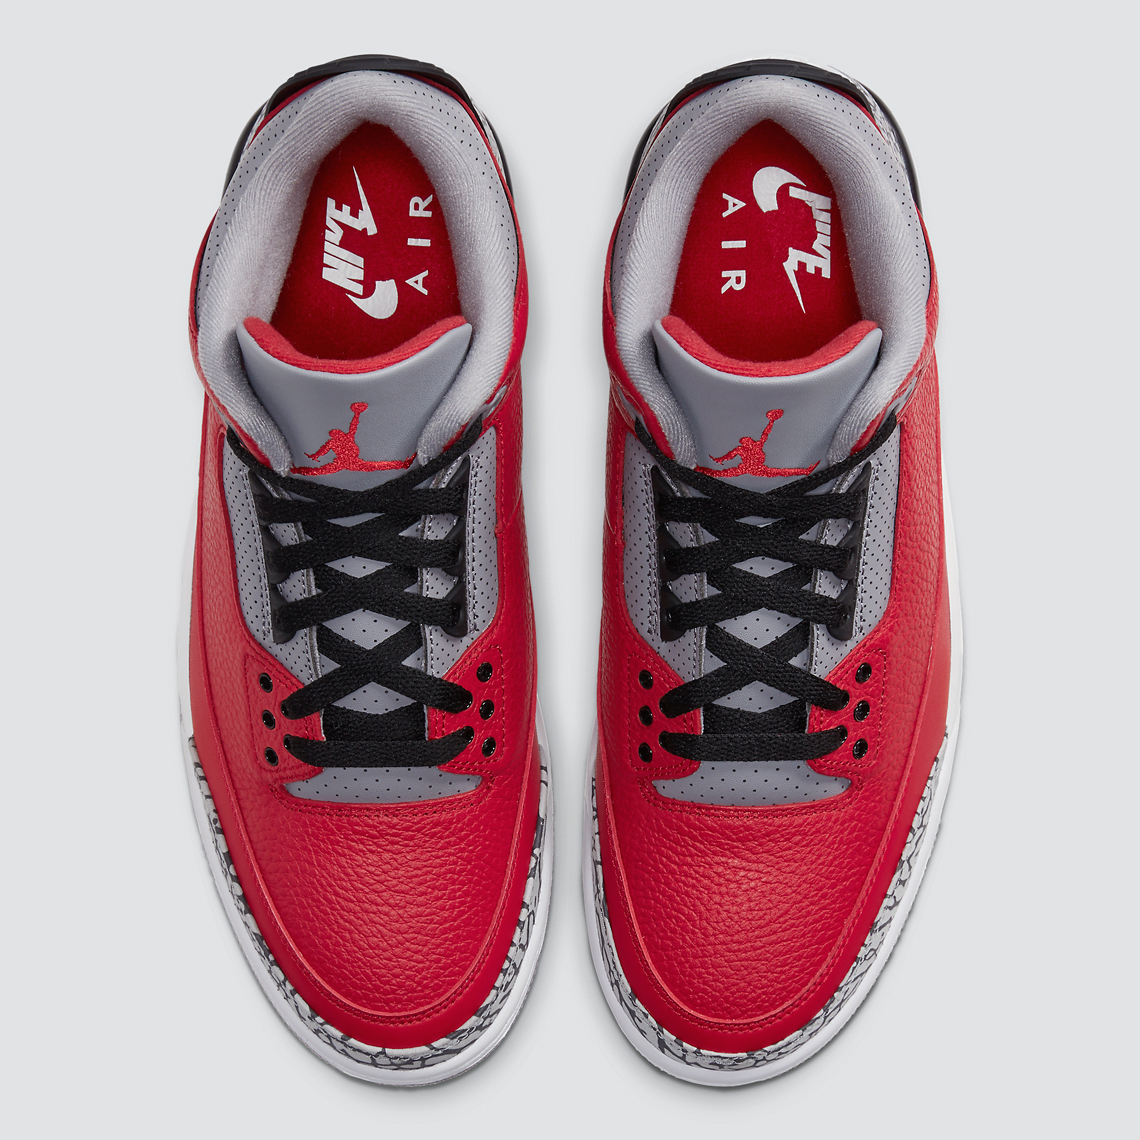 Air Jordan 3 Unite Fire Red CK5692-600 Release Date | SneakerNews.com